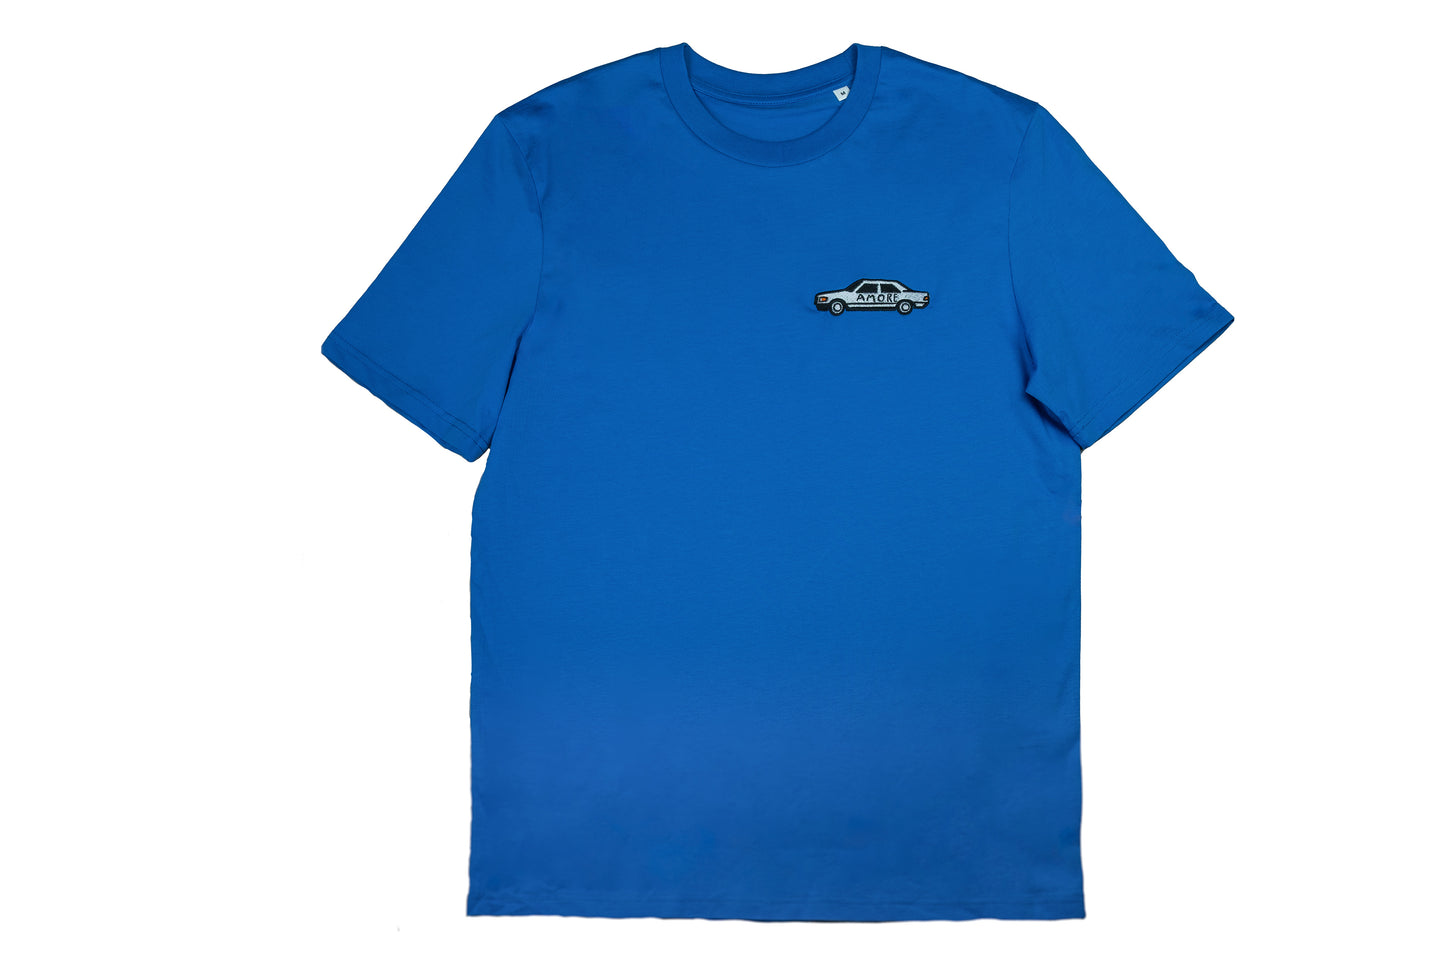 WANDA T-Shirt "Amore Auto" (bright blue)